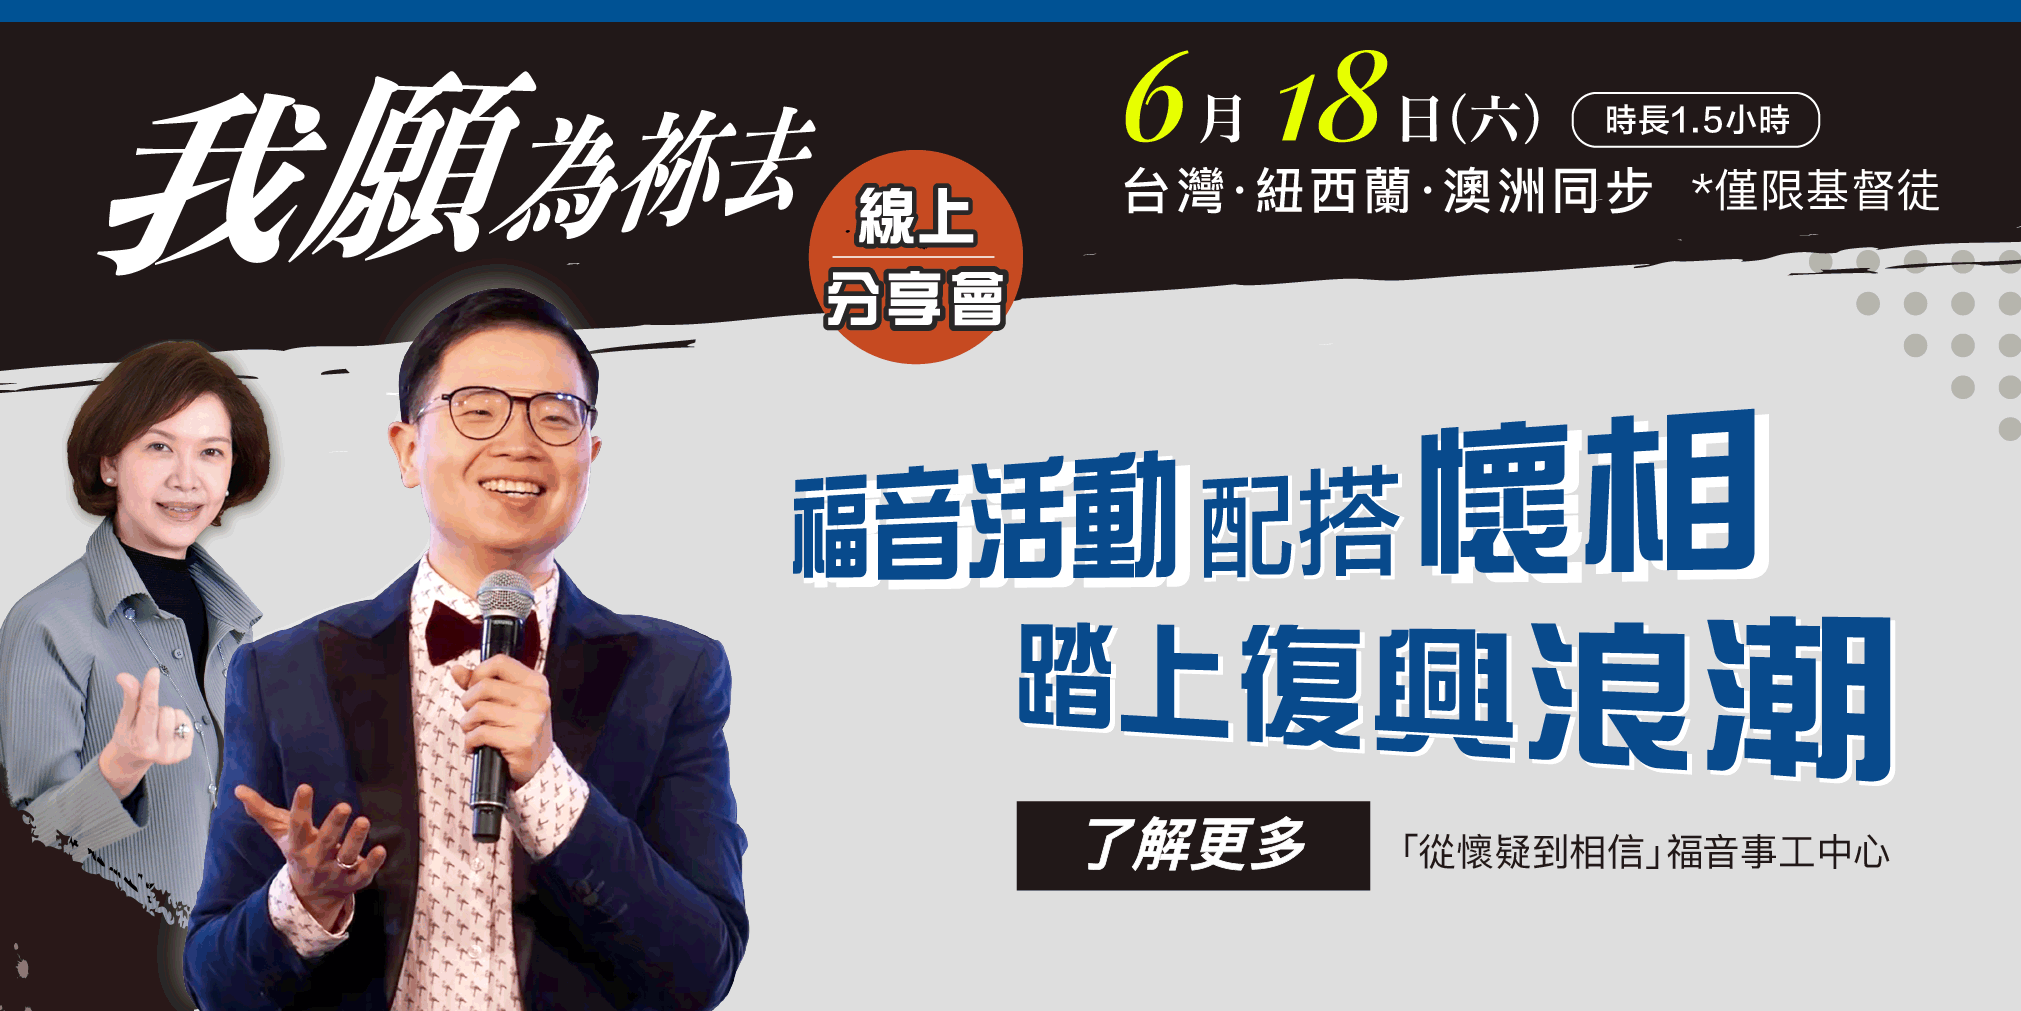 #84881 財團法人台北市傳理文教基金會 (5/29-6/4) 底部廣告